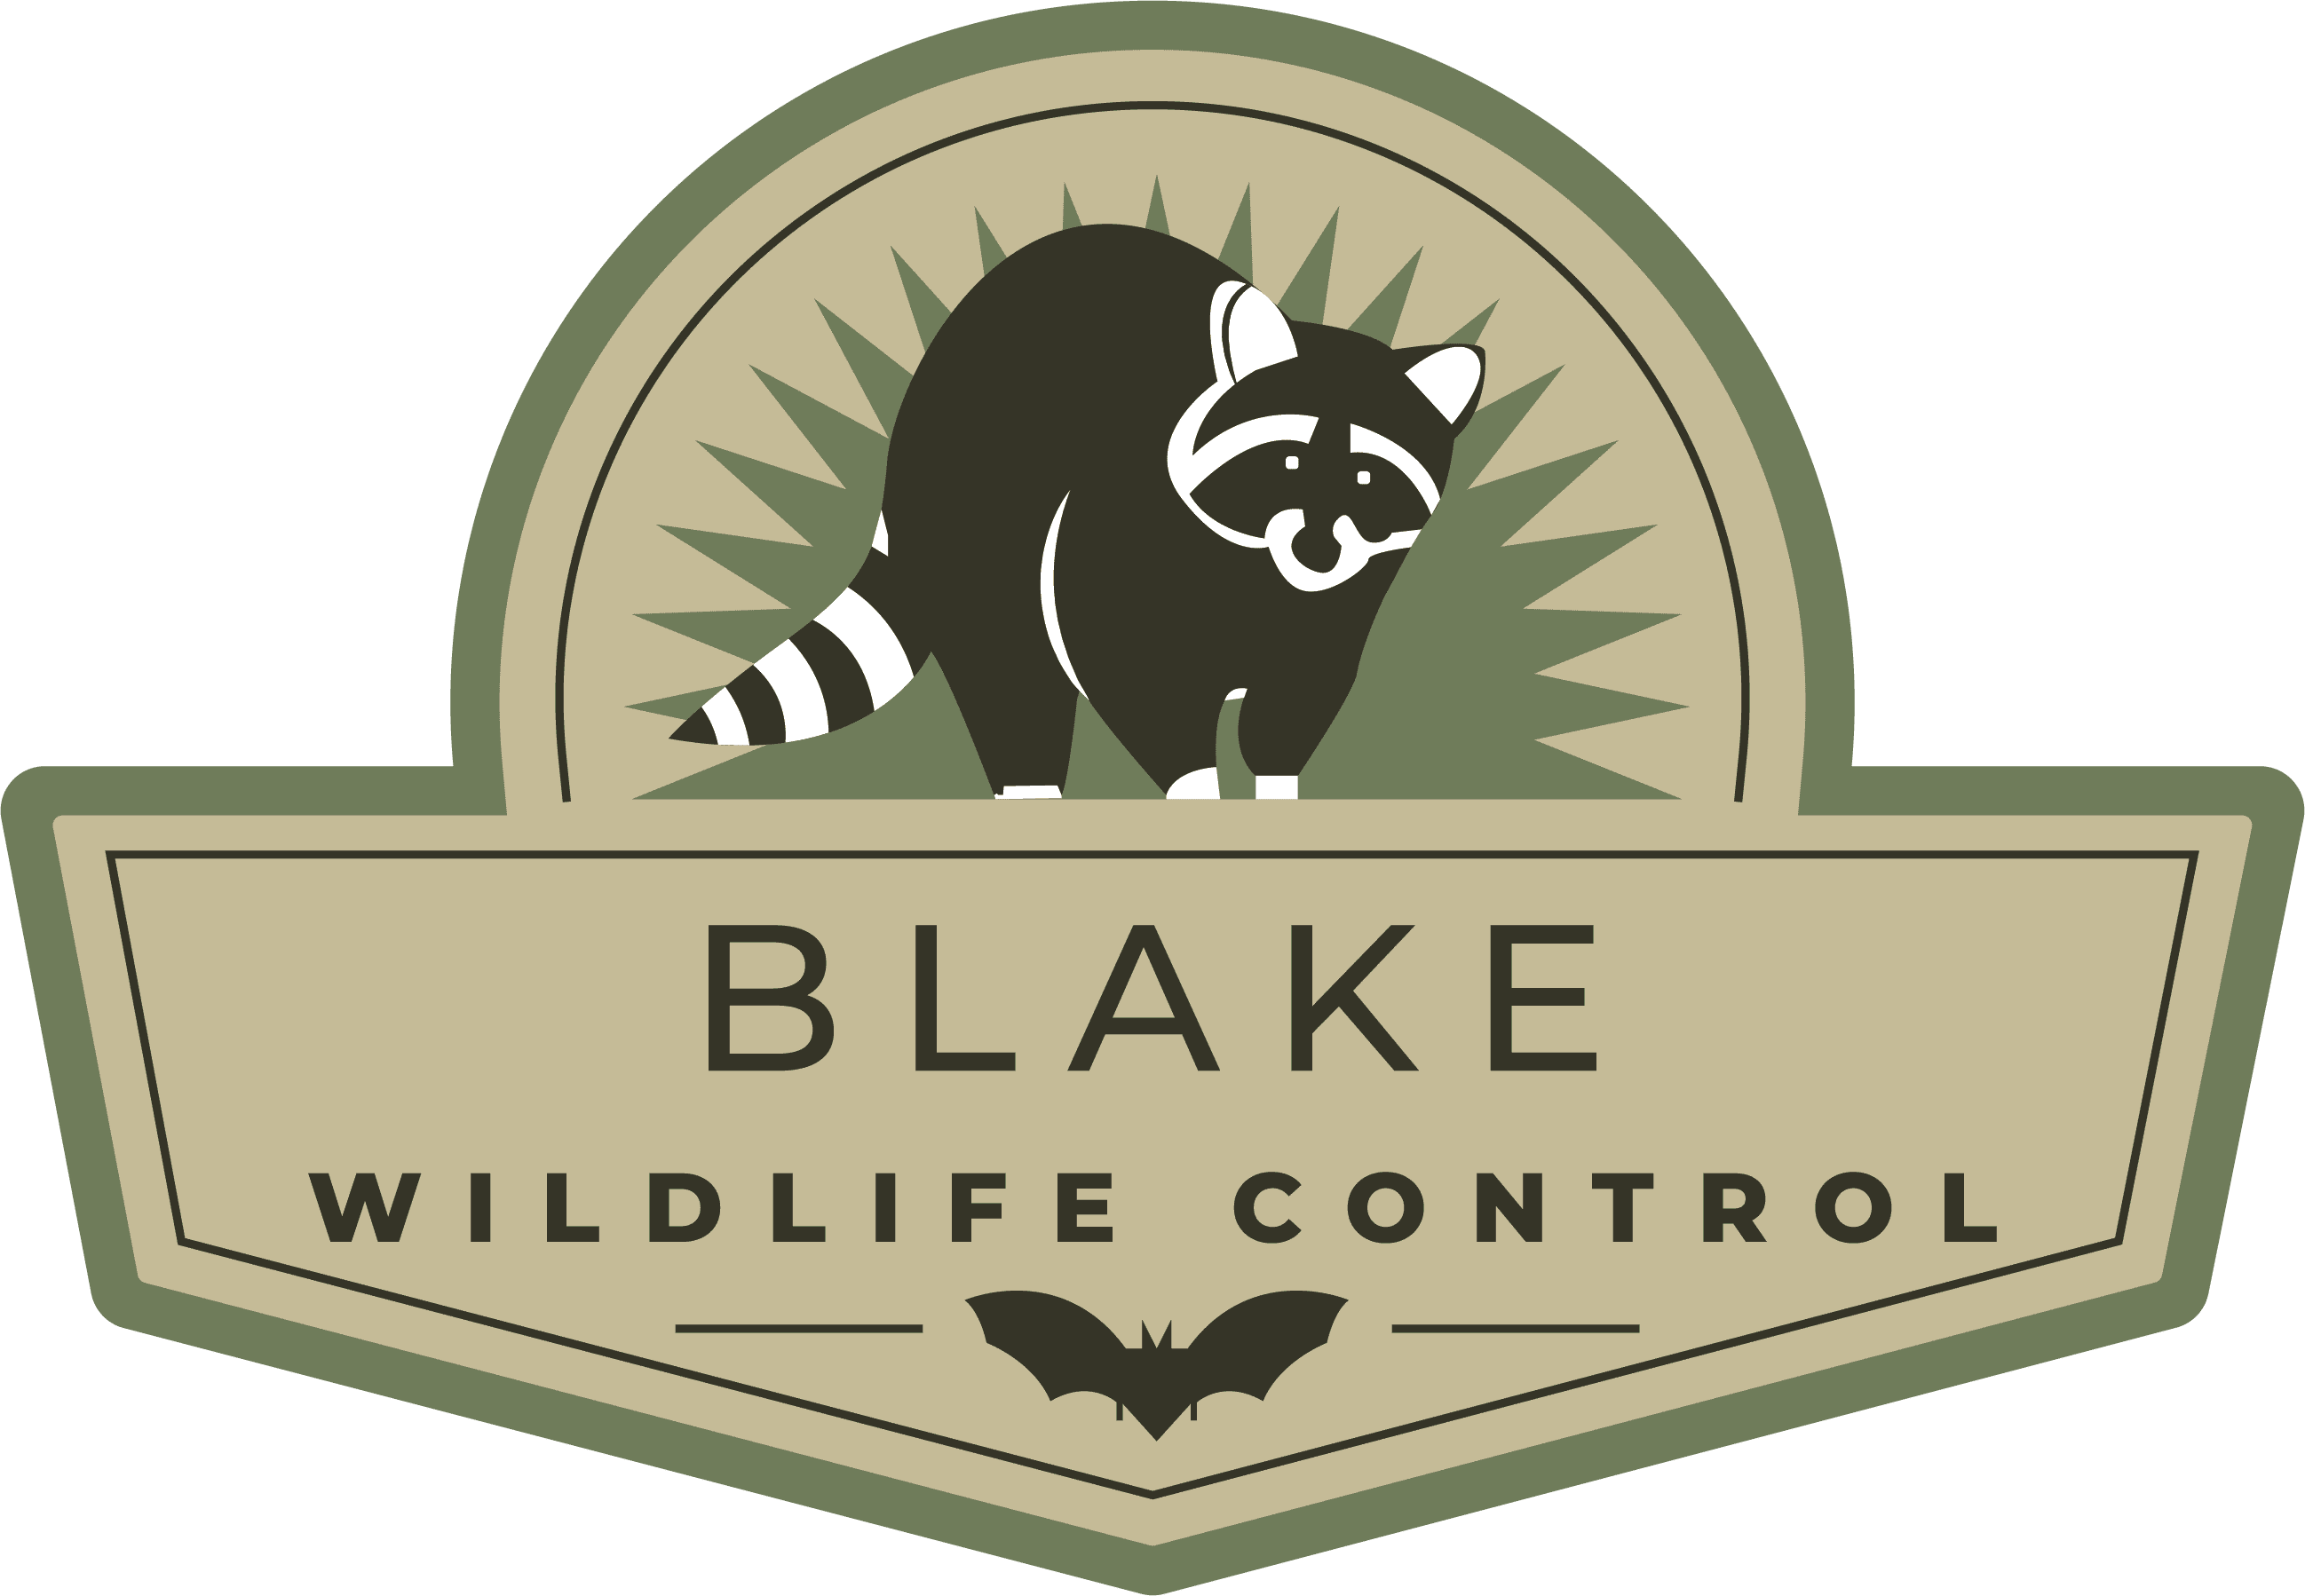 Blakes Wildlife